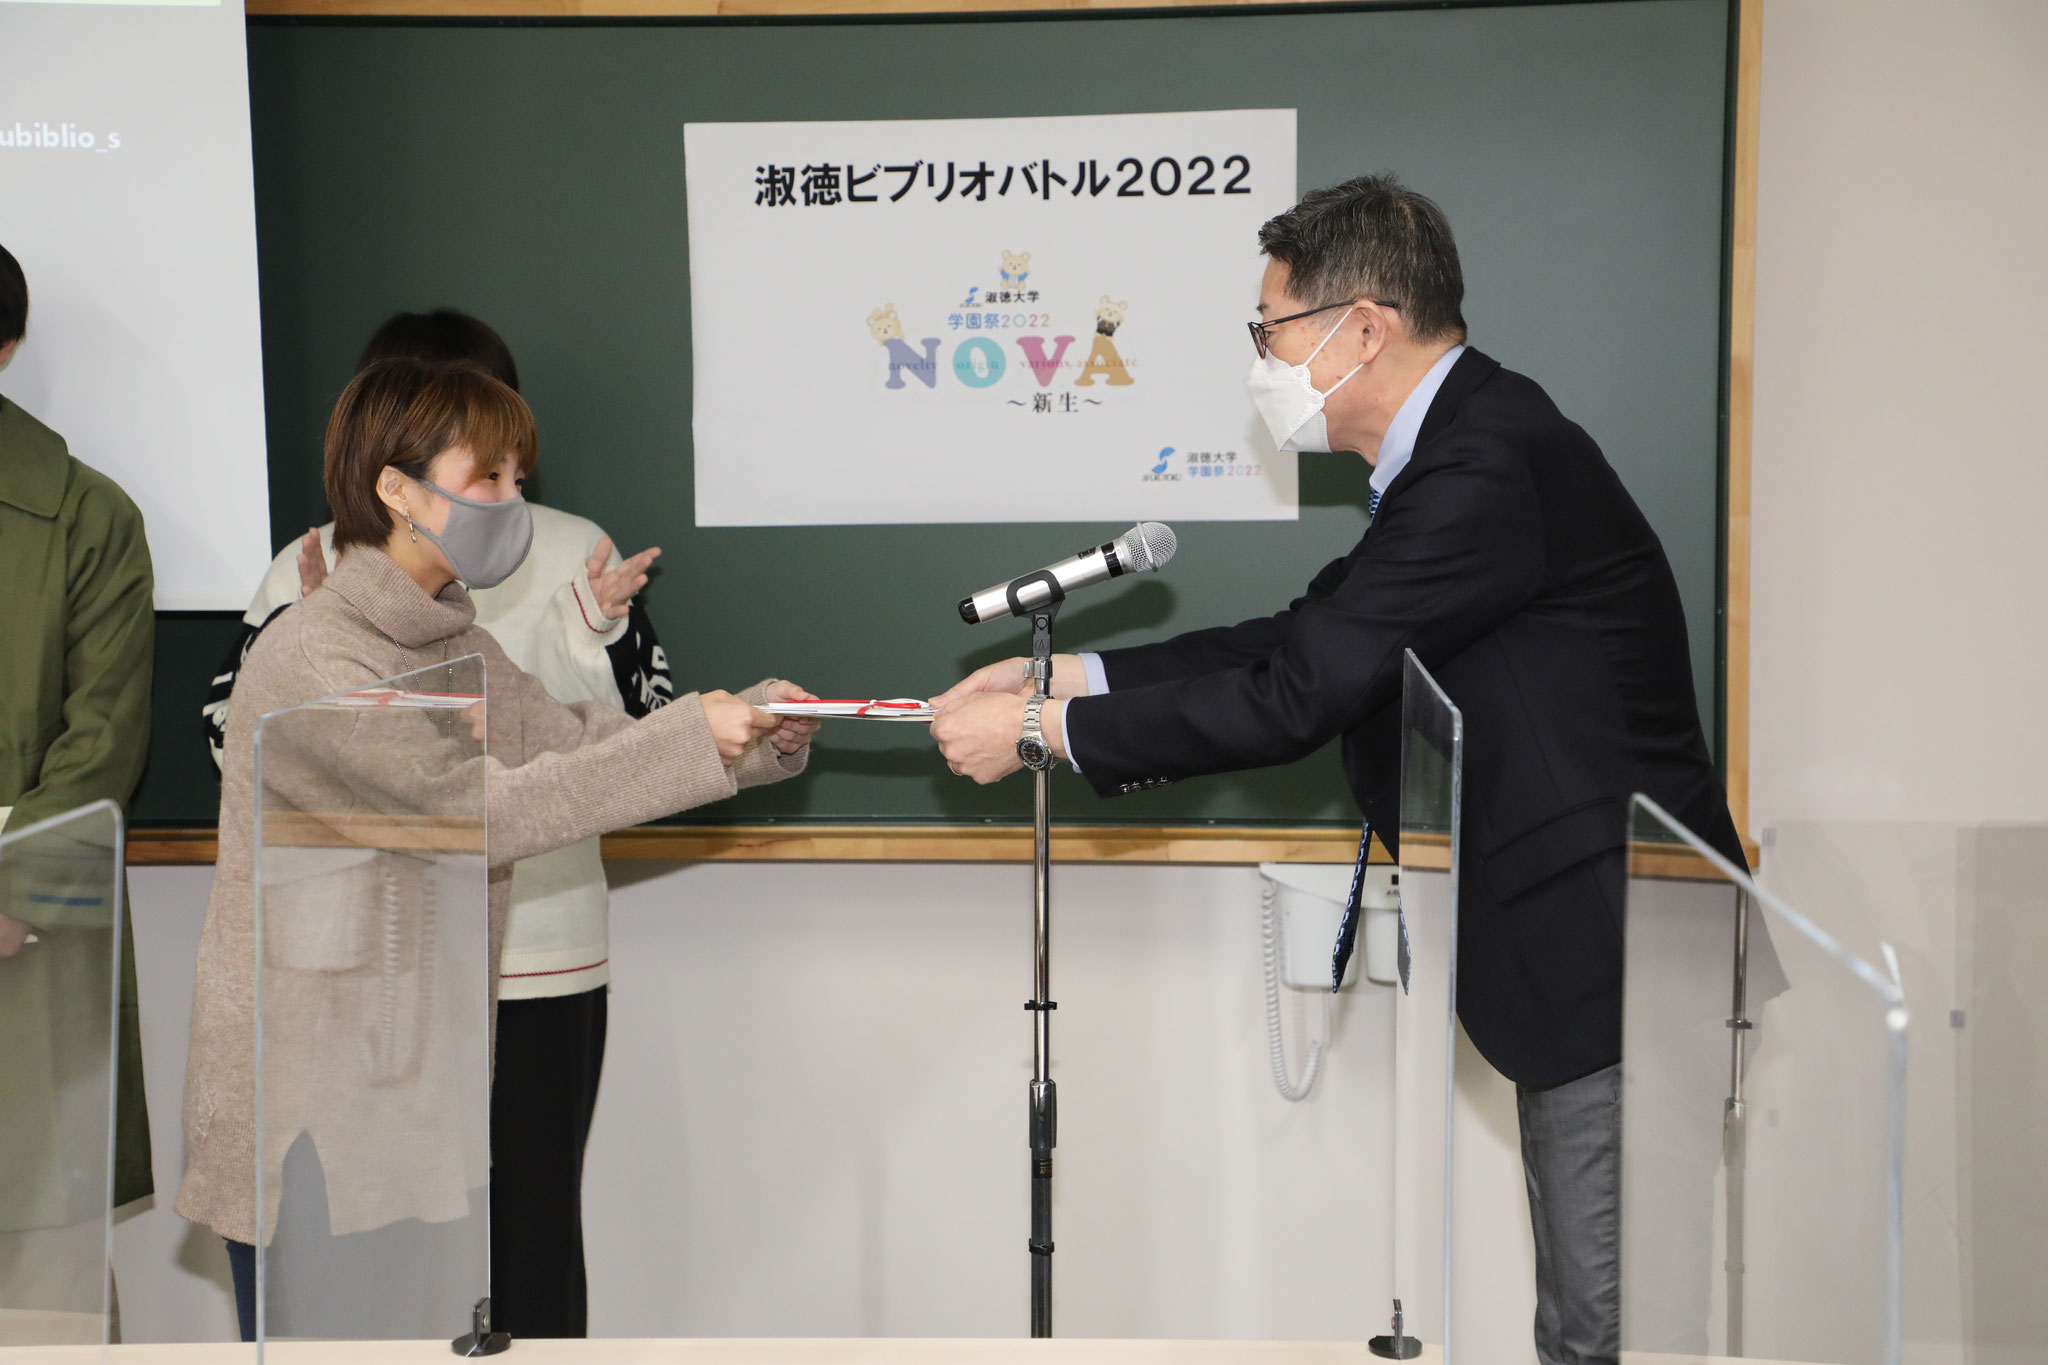 グランプリに輝いた東京キャンパス代表井坂さんへ、学長より賞状を賞品が授与されました。